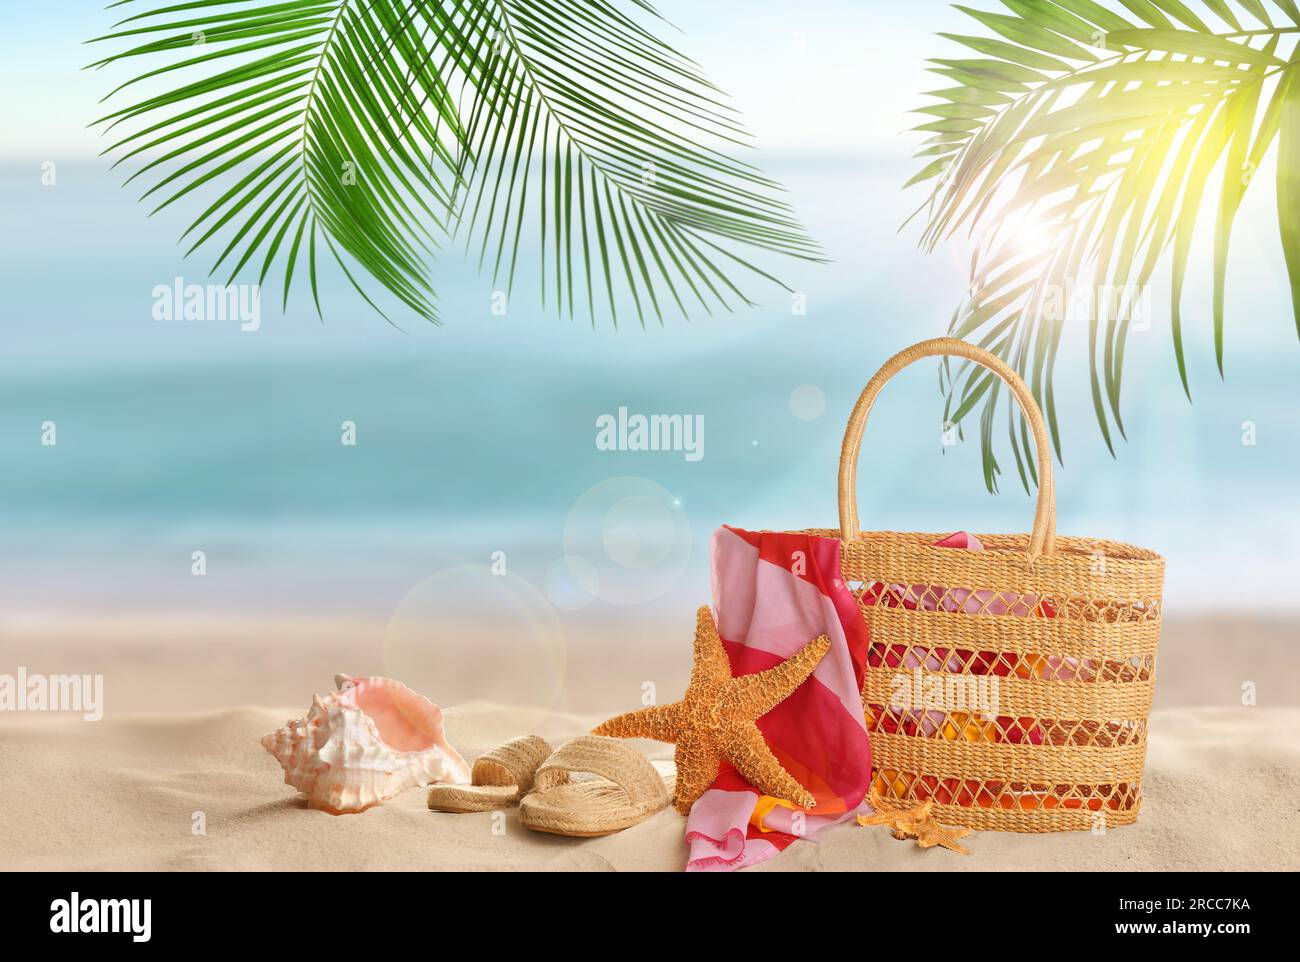 Sac avec accessoires sur la plage ensoleillée de l'océan, espace pour le texte. Vacances d'été Banque D'Images